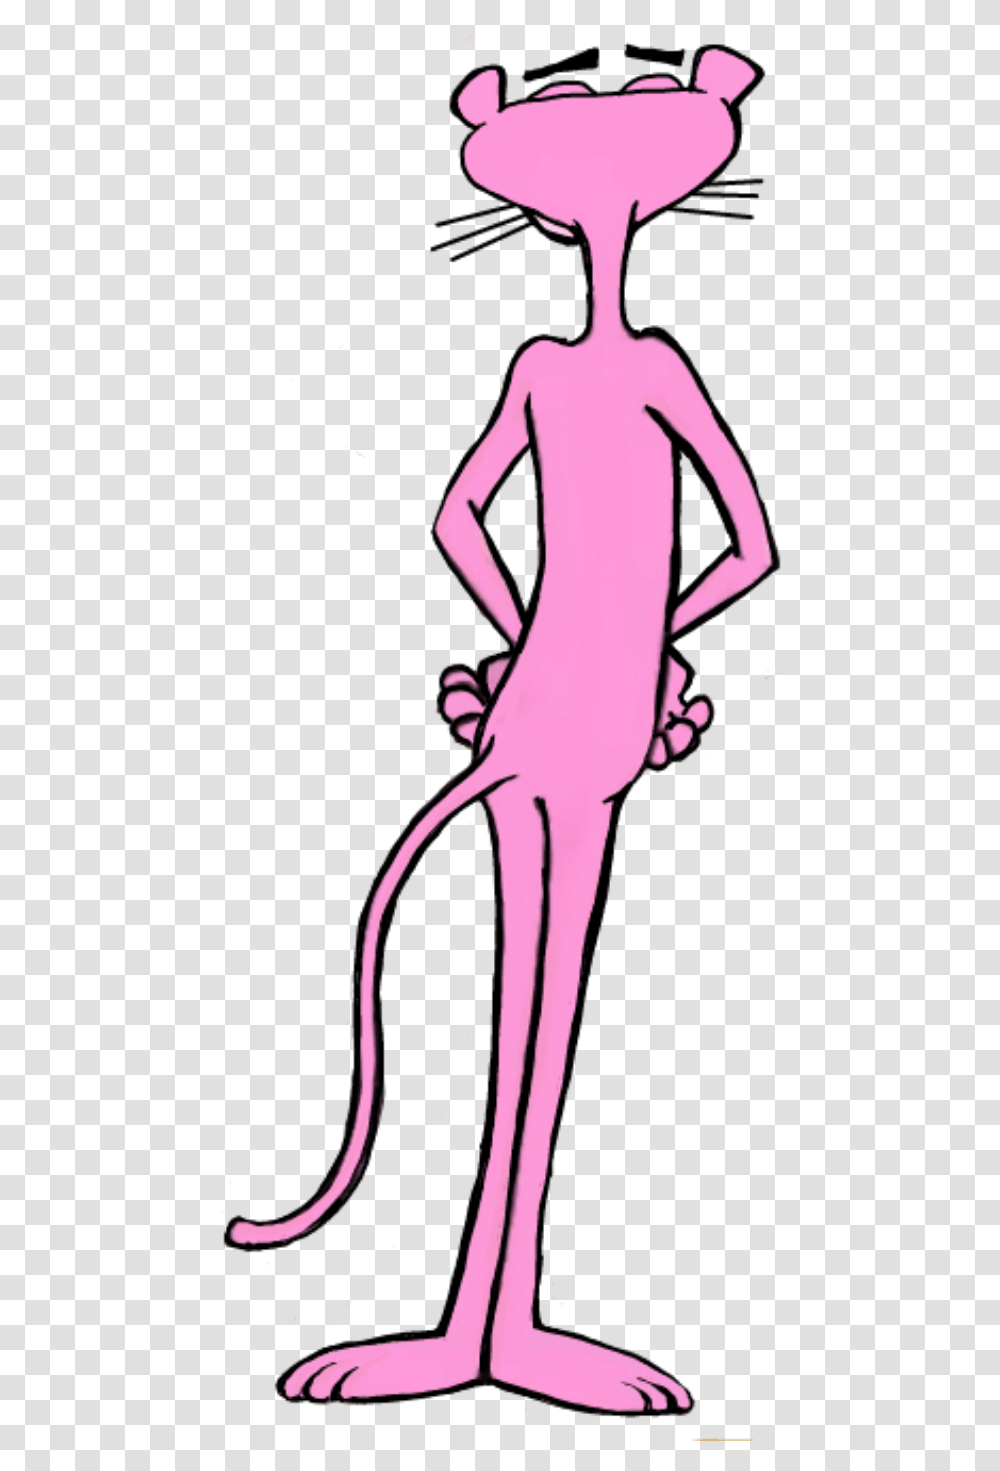 Pink Pinkpanther Pinkpnter Panther Pantera Illustration, Person Transparent Png